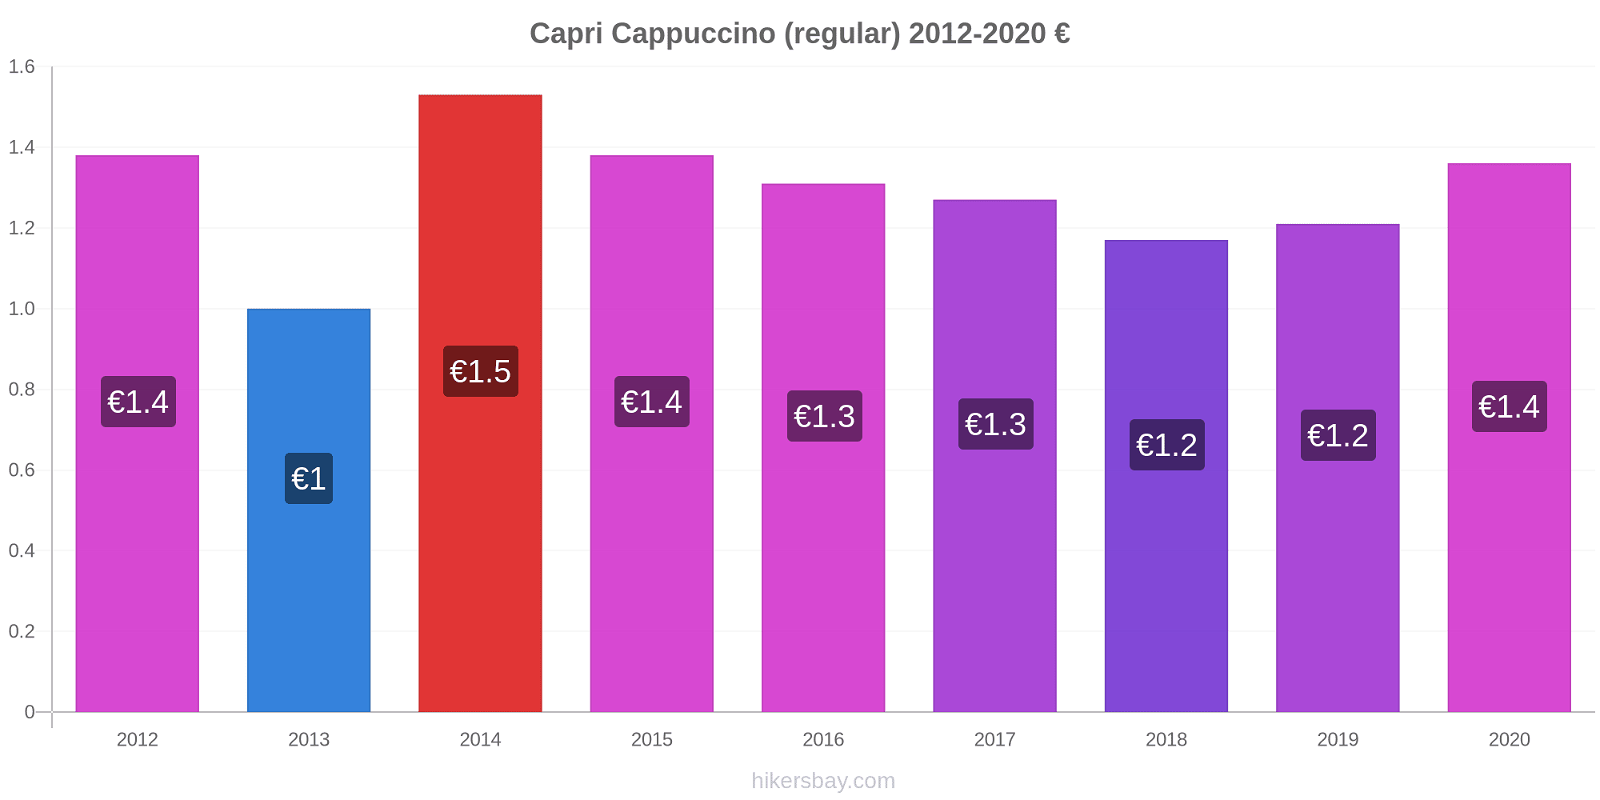 Capri price changes Cappuccino (regular) hikersbay.com